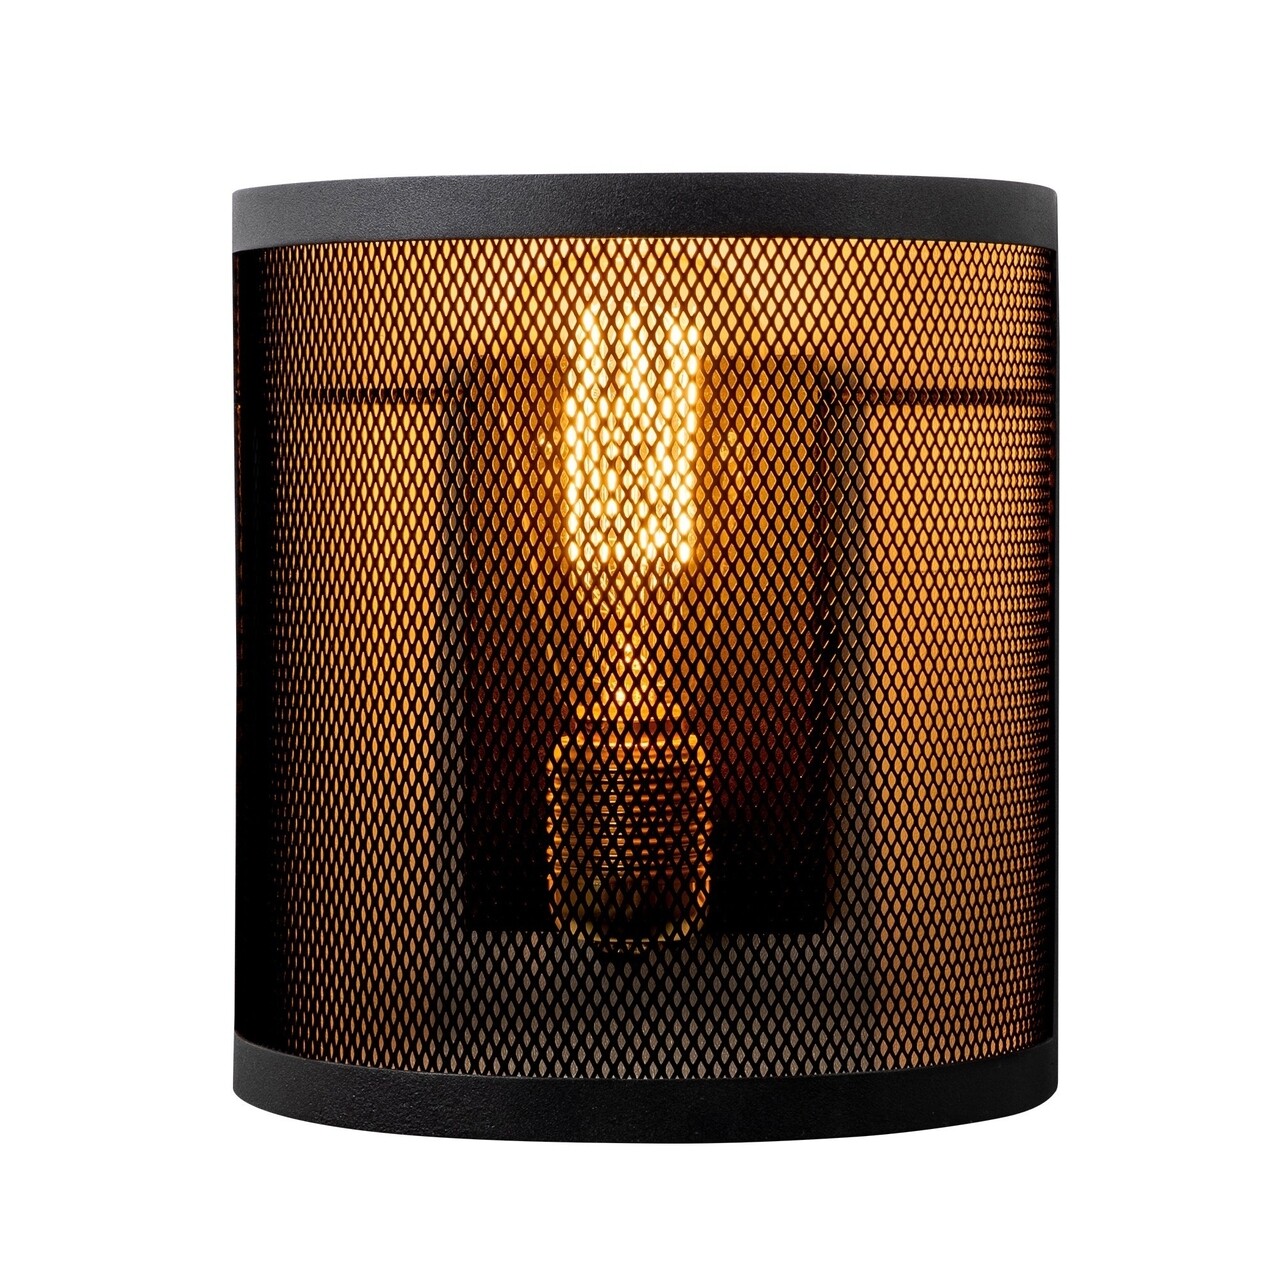 Amasra N-989 fali lámpa, Noor, 20 x 23 cm, 1 x E27, 100 W, fekete